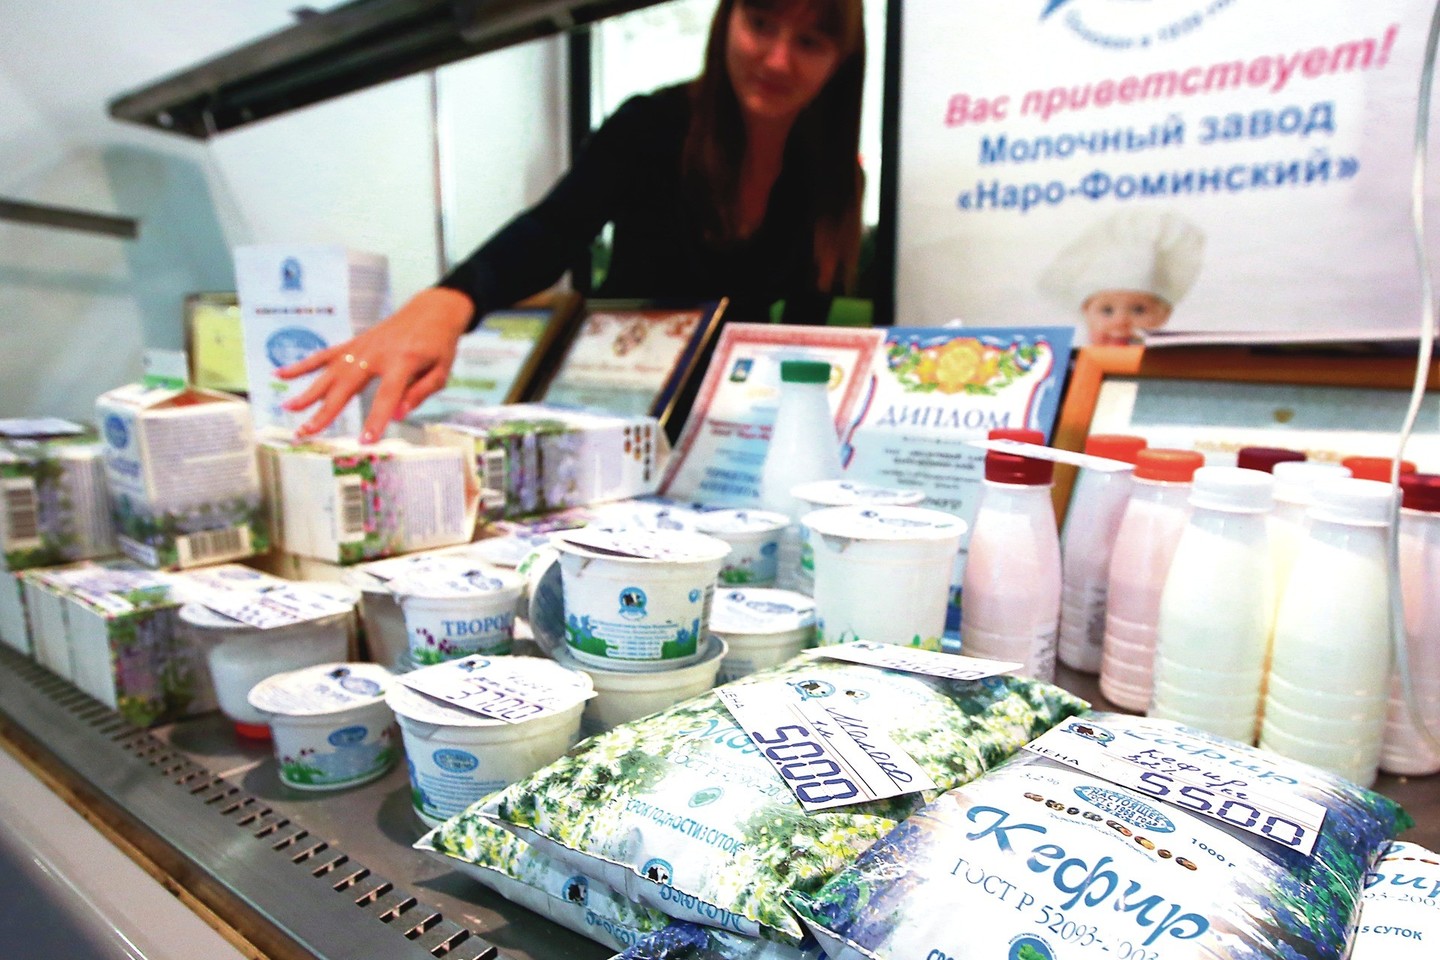 Tradicijos keičiasi: vis daugiau Rusijos pienininkų ryžtasi naudoti gaminiuose palmių aliejų – netgi ir esant muitams jis padeda atpiginti produktus.<br>„ViDA Press“ nuotr.